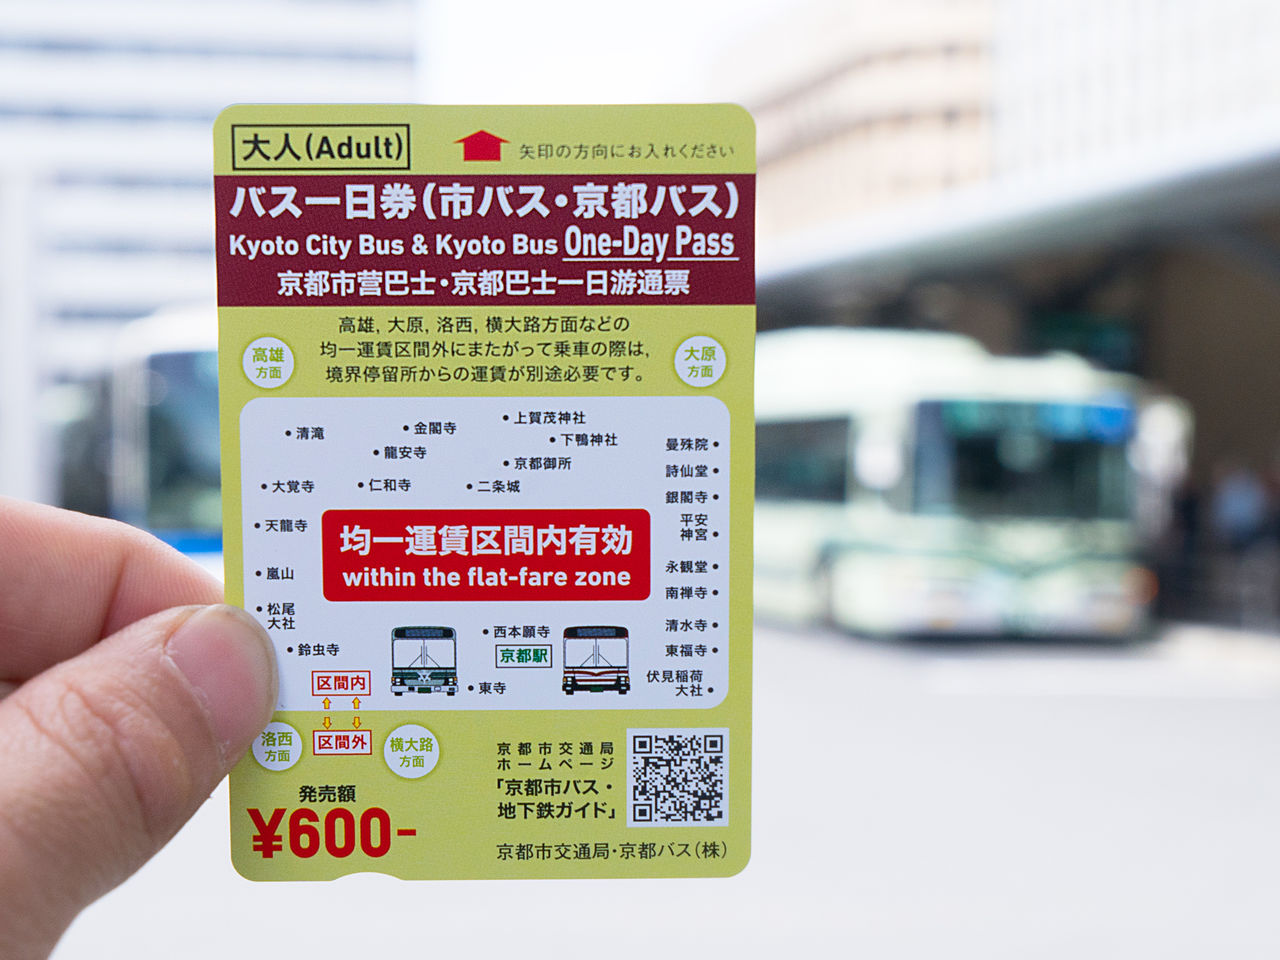 Однодневный проездной на автобусе можно использовать на автобусах Kyoto City Bus и Kyoto Bus Company